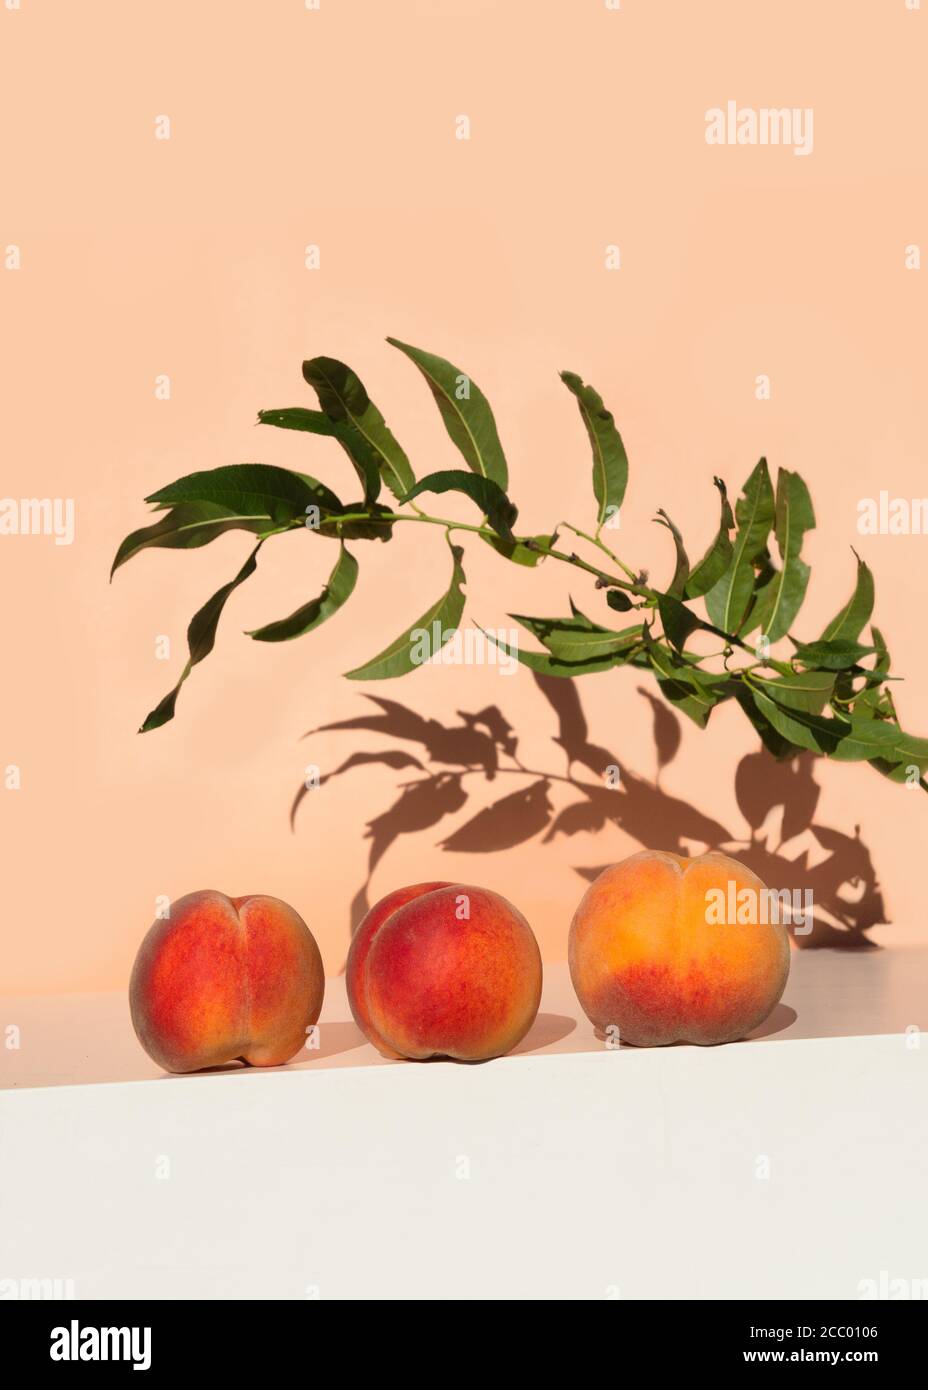 Pesche fresche mature su tavola bianca su sfondo di colore rosa arancio. Vista ad angolo basso. Concetto creativo di frutta estiva minima. Foto Stock